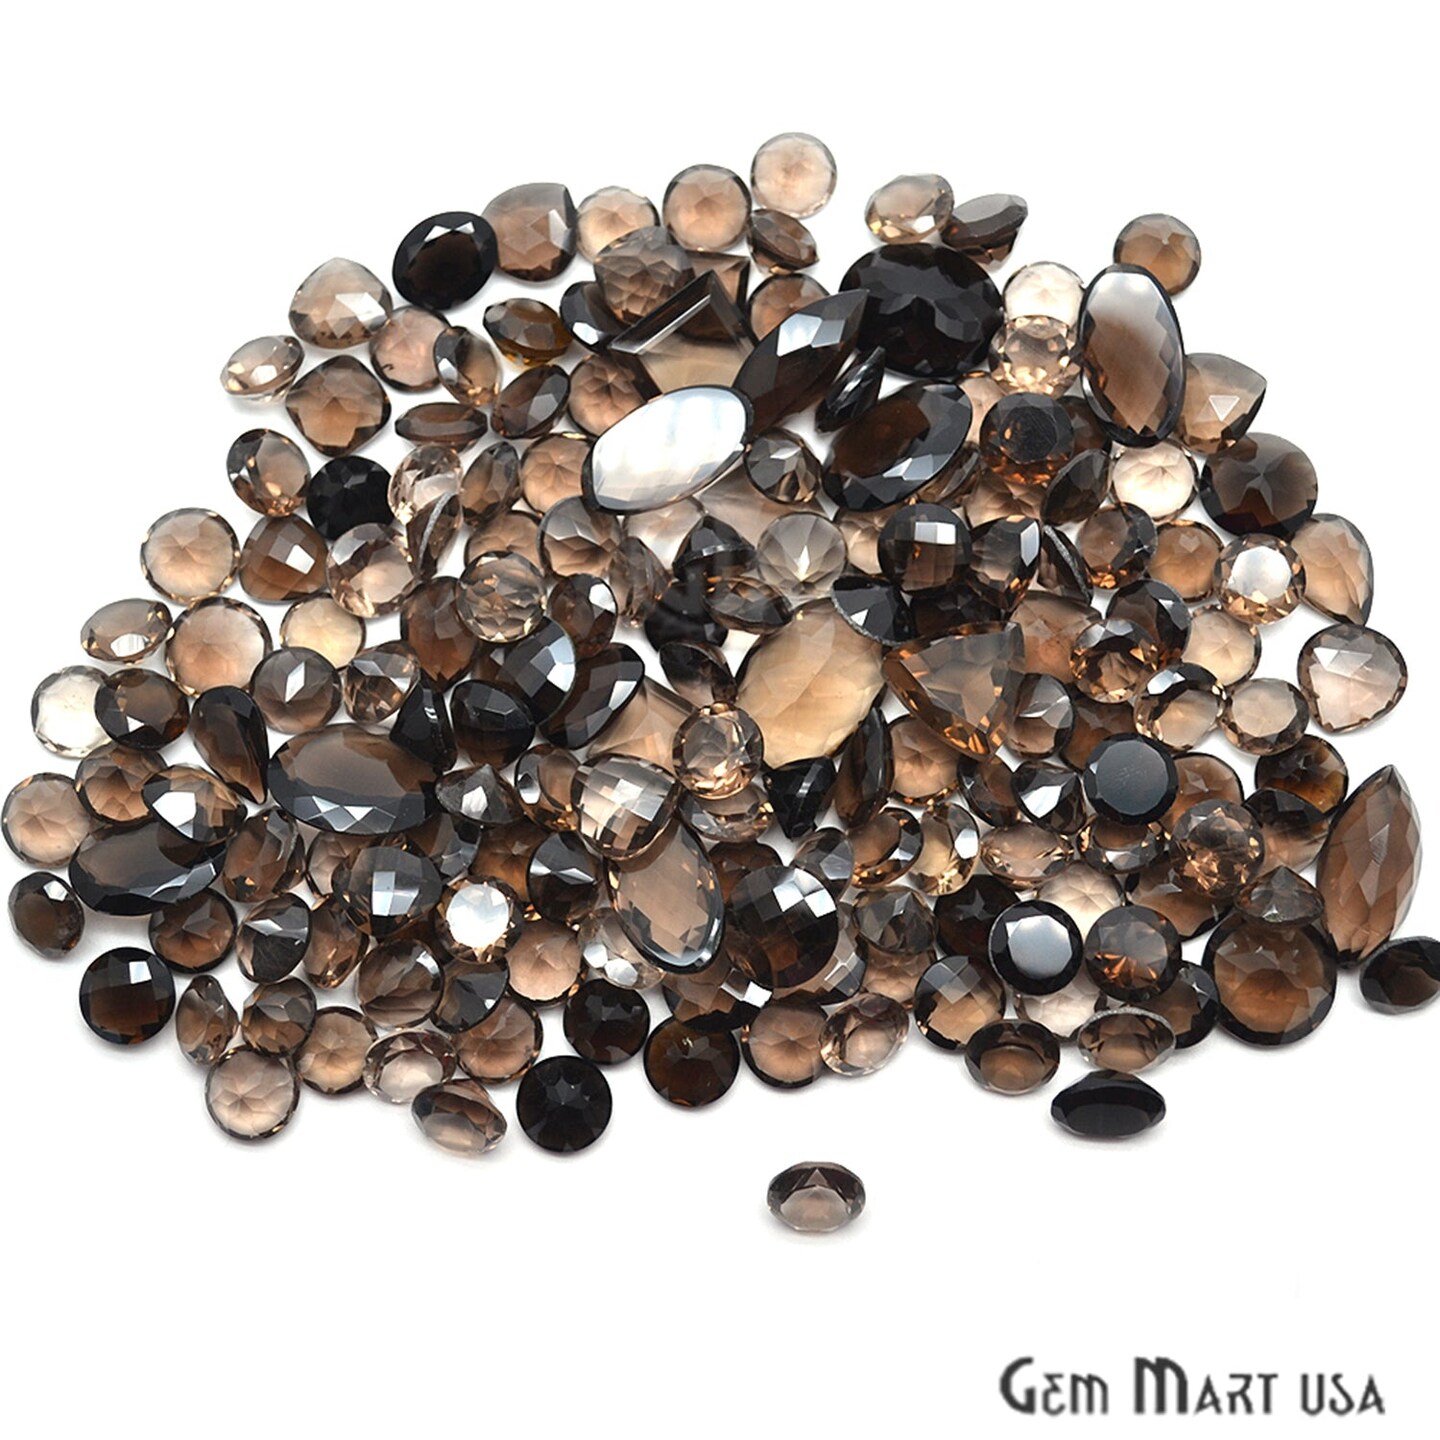 Smoky Topaz Gemstone, 100% Natural Faceted Loose Gems, November Birthstone, 10-20mm, 100 Carats, GemMartUSA (ST-60010)